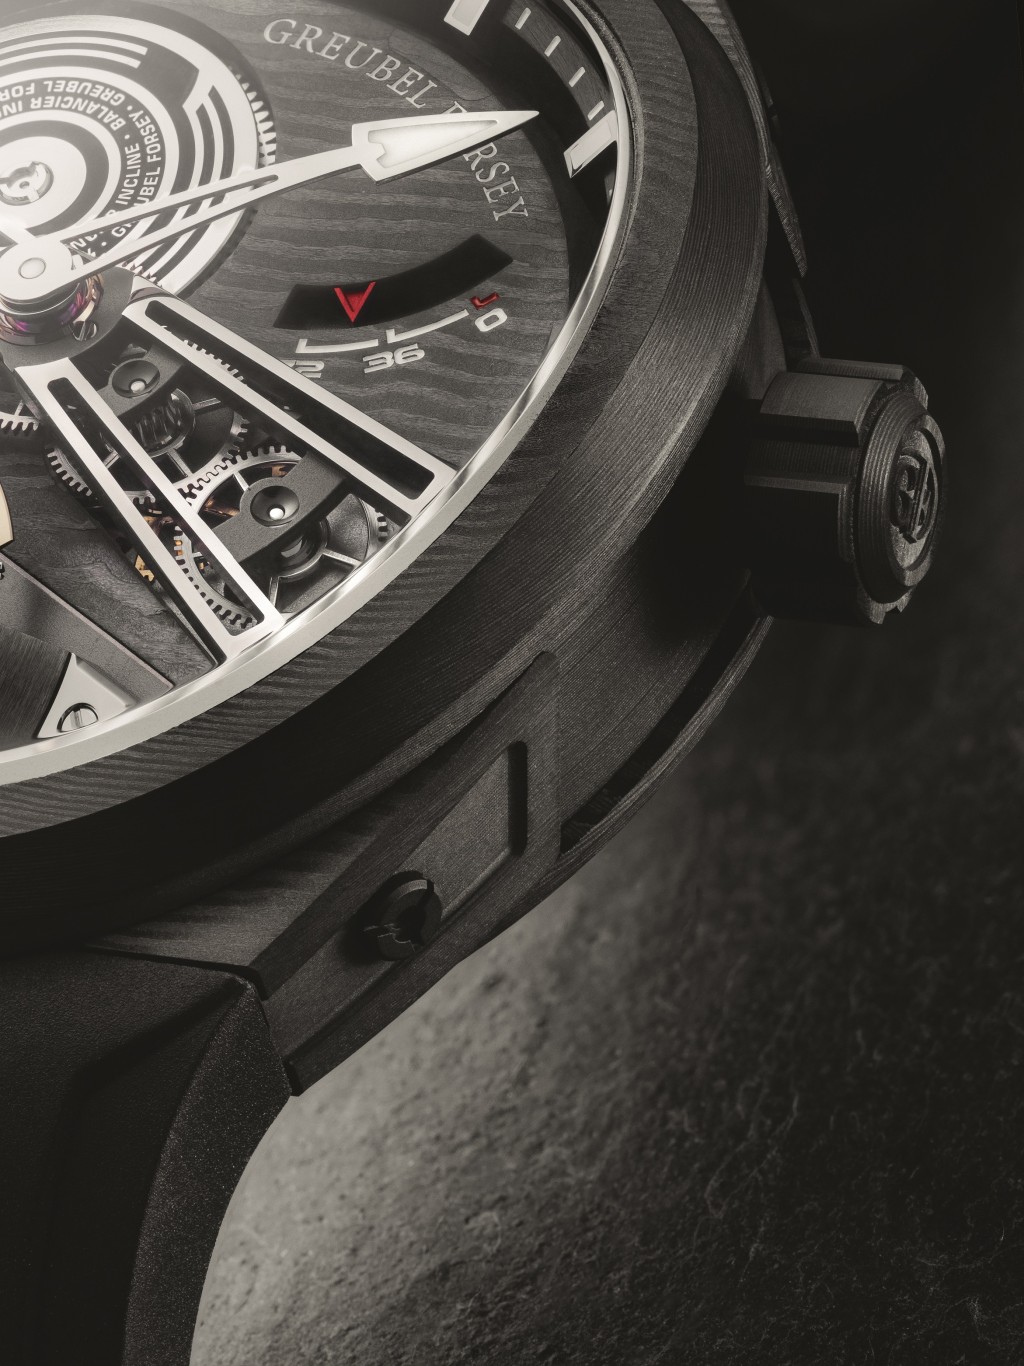 錶盤布局緊湊，錶殼以碳纖維製亦非常輕巧，更切合其運動錶風格。